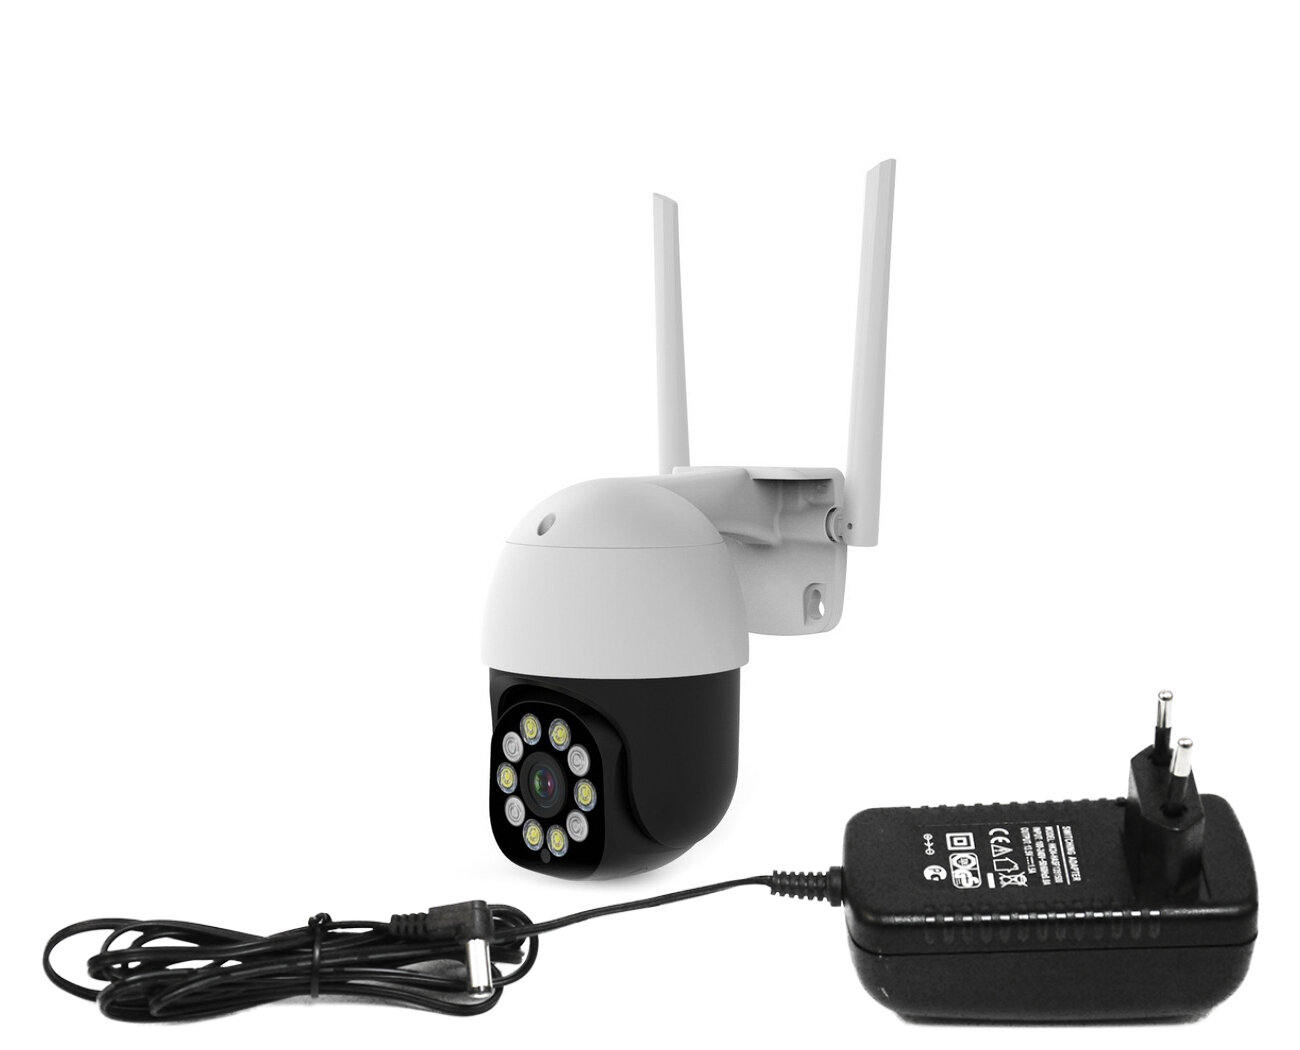 IP камера Wi-Fi уличная поворотная HDком 0110(ASW5)8GS Туйя (WiFi) (F1638EU) (разр 5мп) приложение туйя / Smartlife и облачной записью AMAZON. Звук.